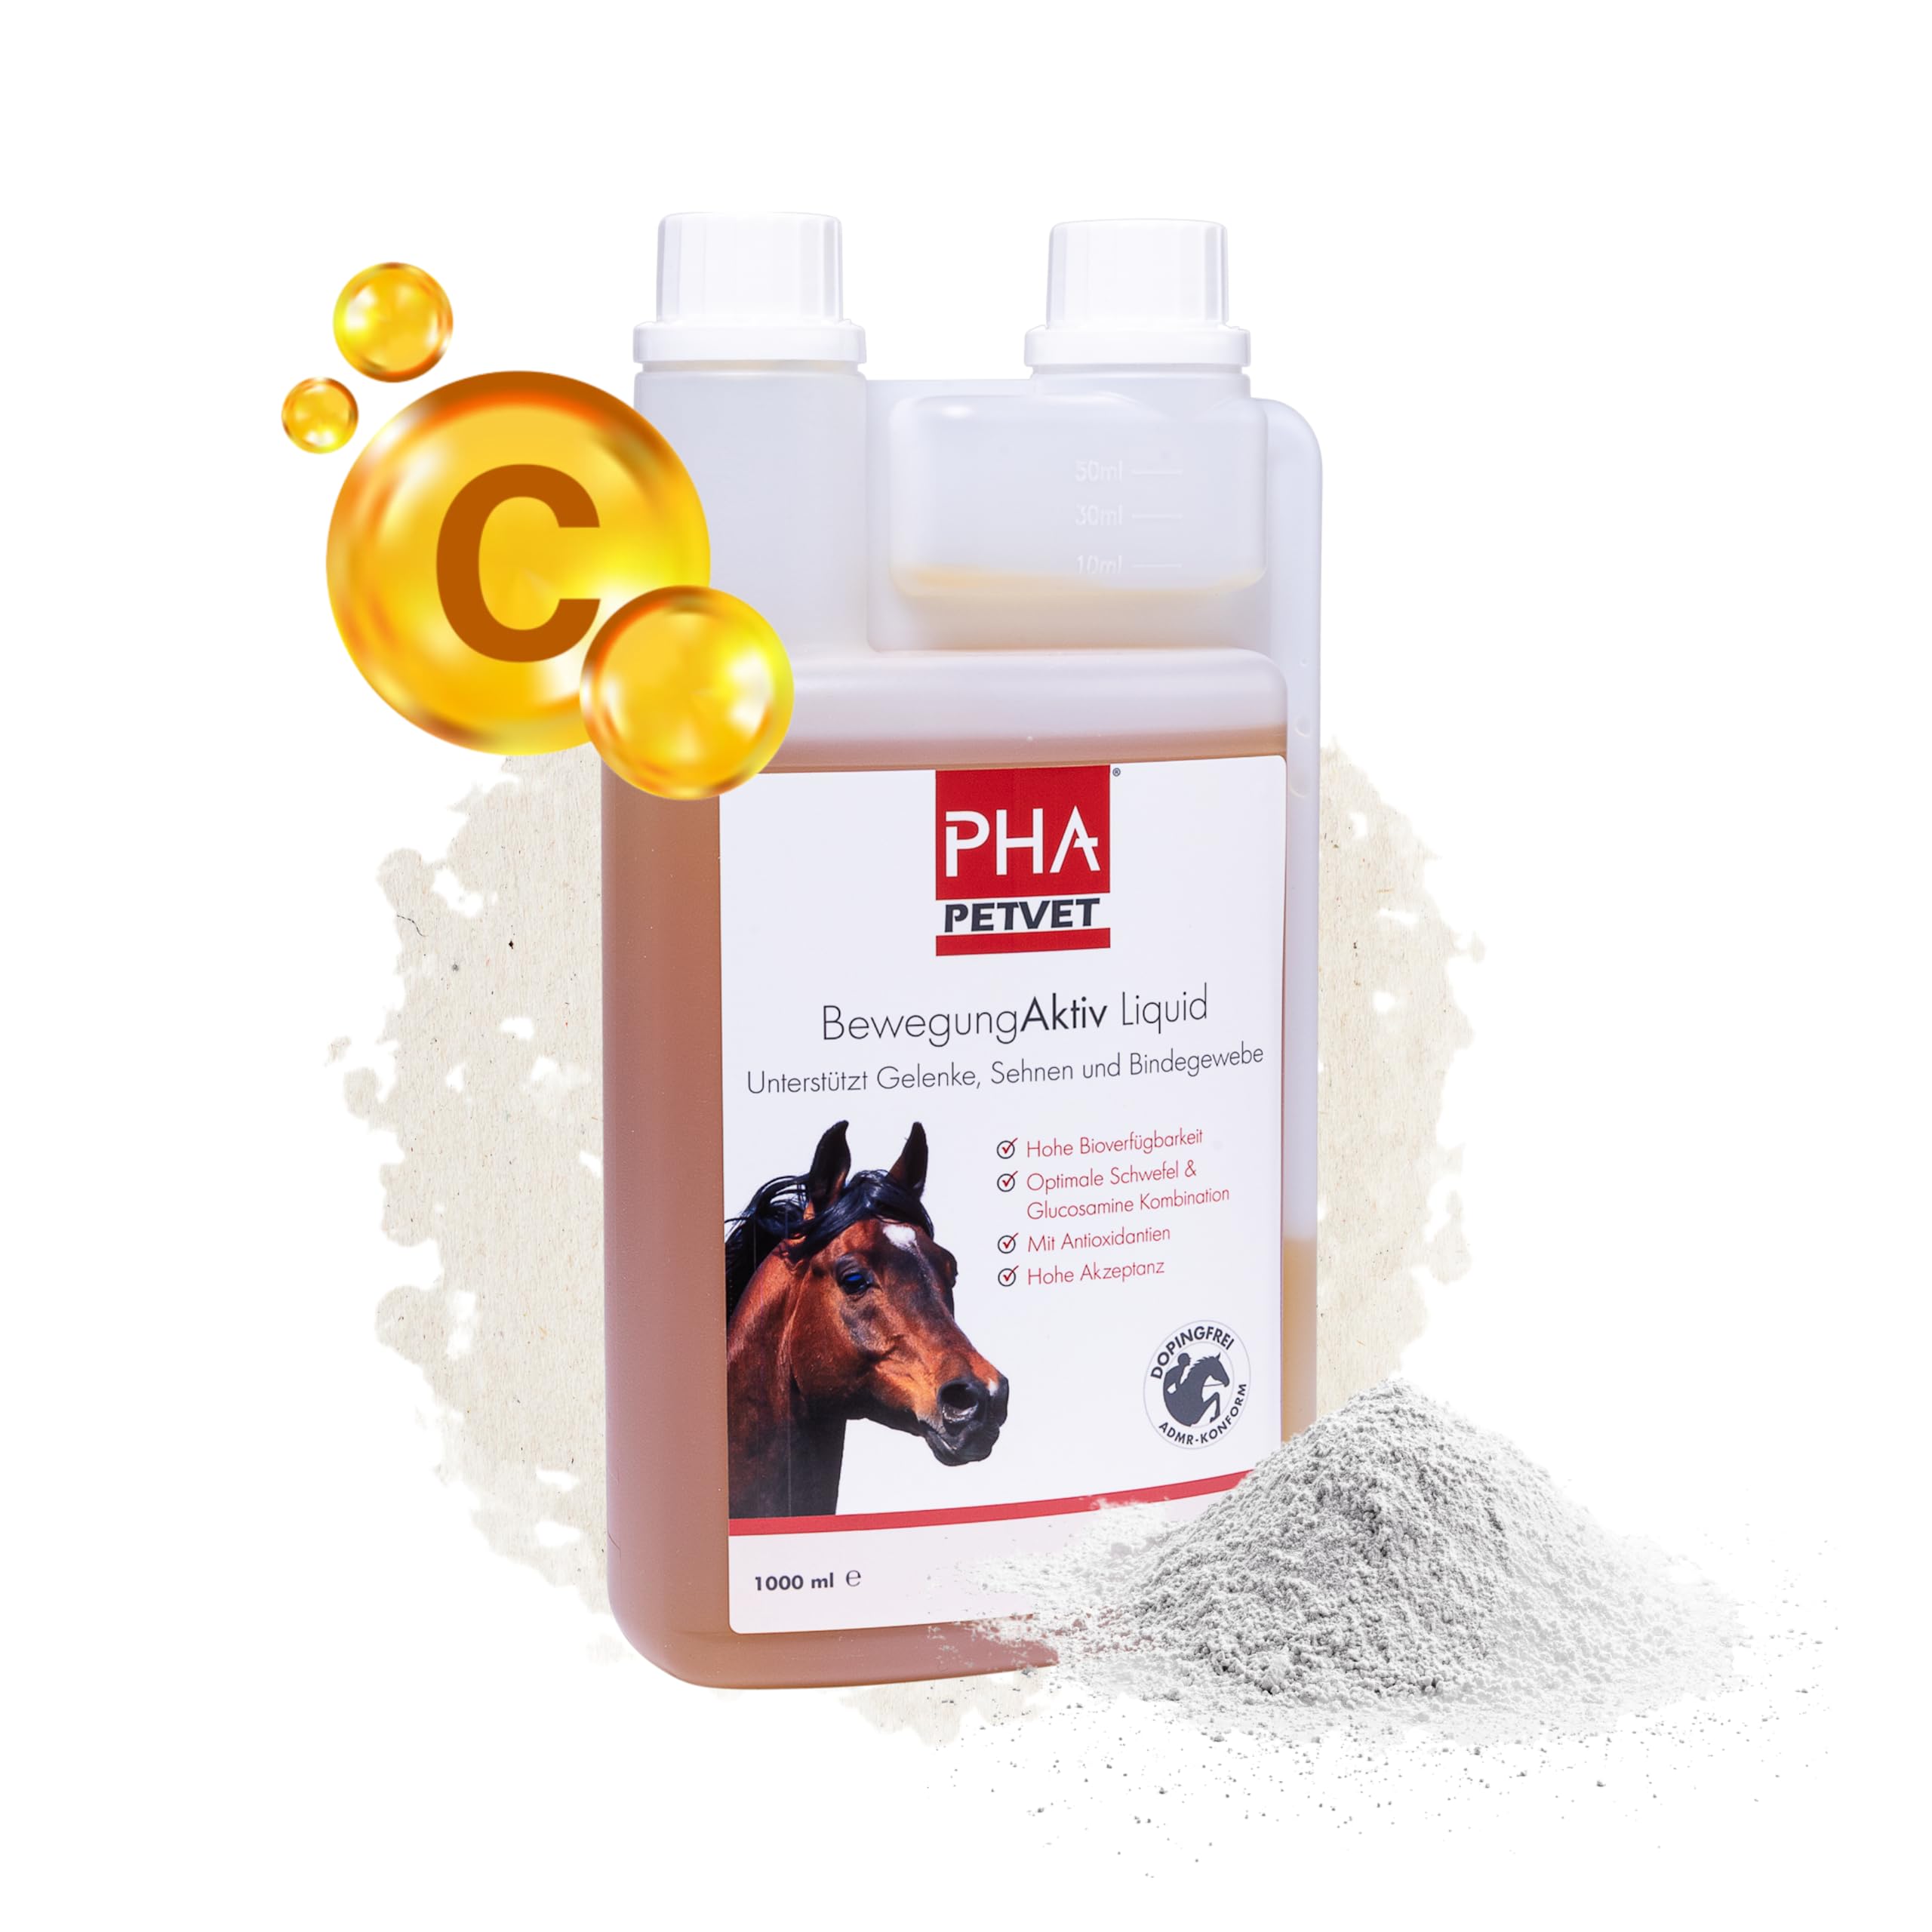 PHA BewegungAktiv Liquid Pferd, unterstützt Gelenke, Knorpel, Sehnen und Beweglichkeit der Pferde, mit MSM, Glucosamin, Chondroitin, Vitaminen, Mineralien, 1l